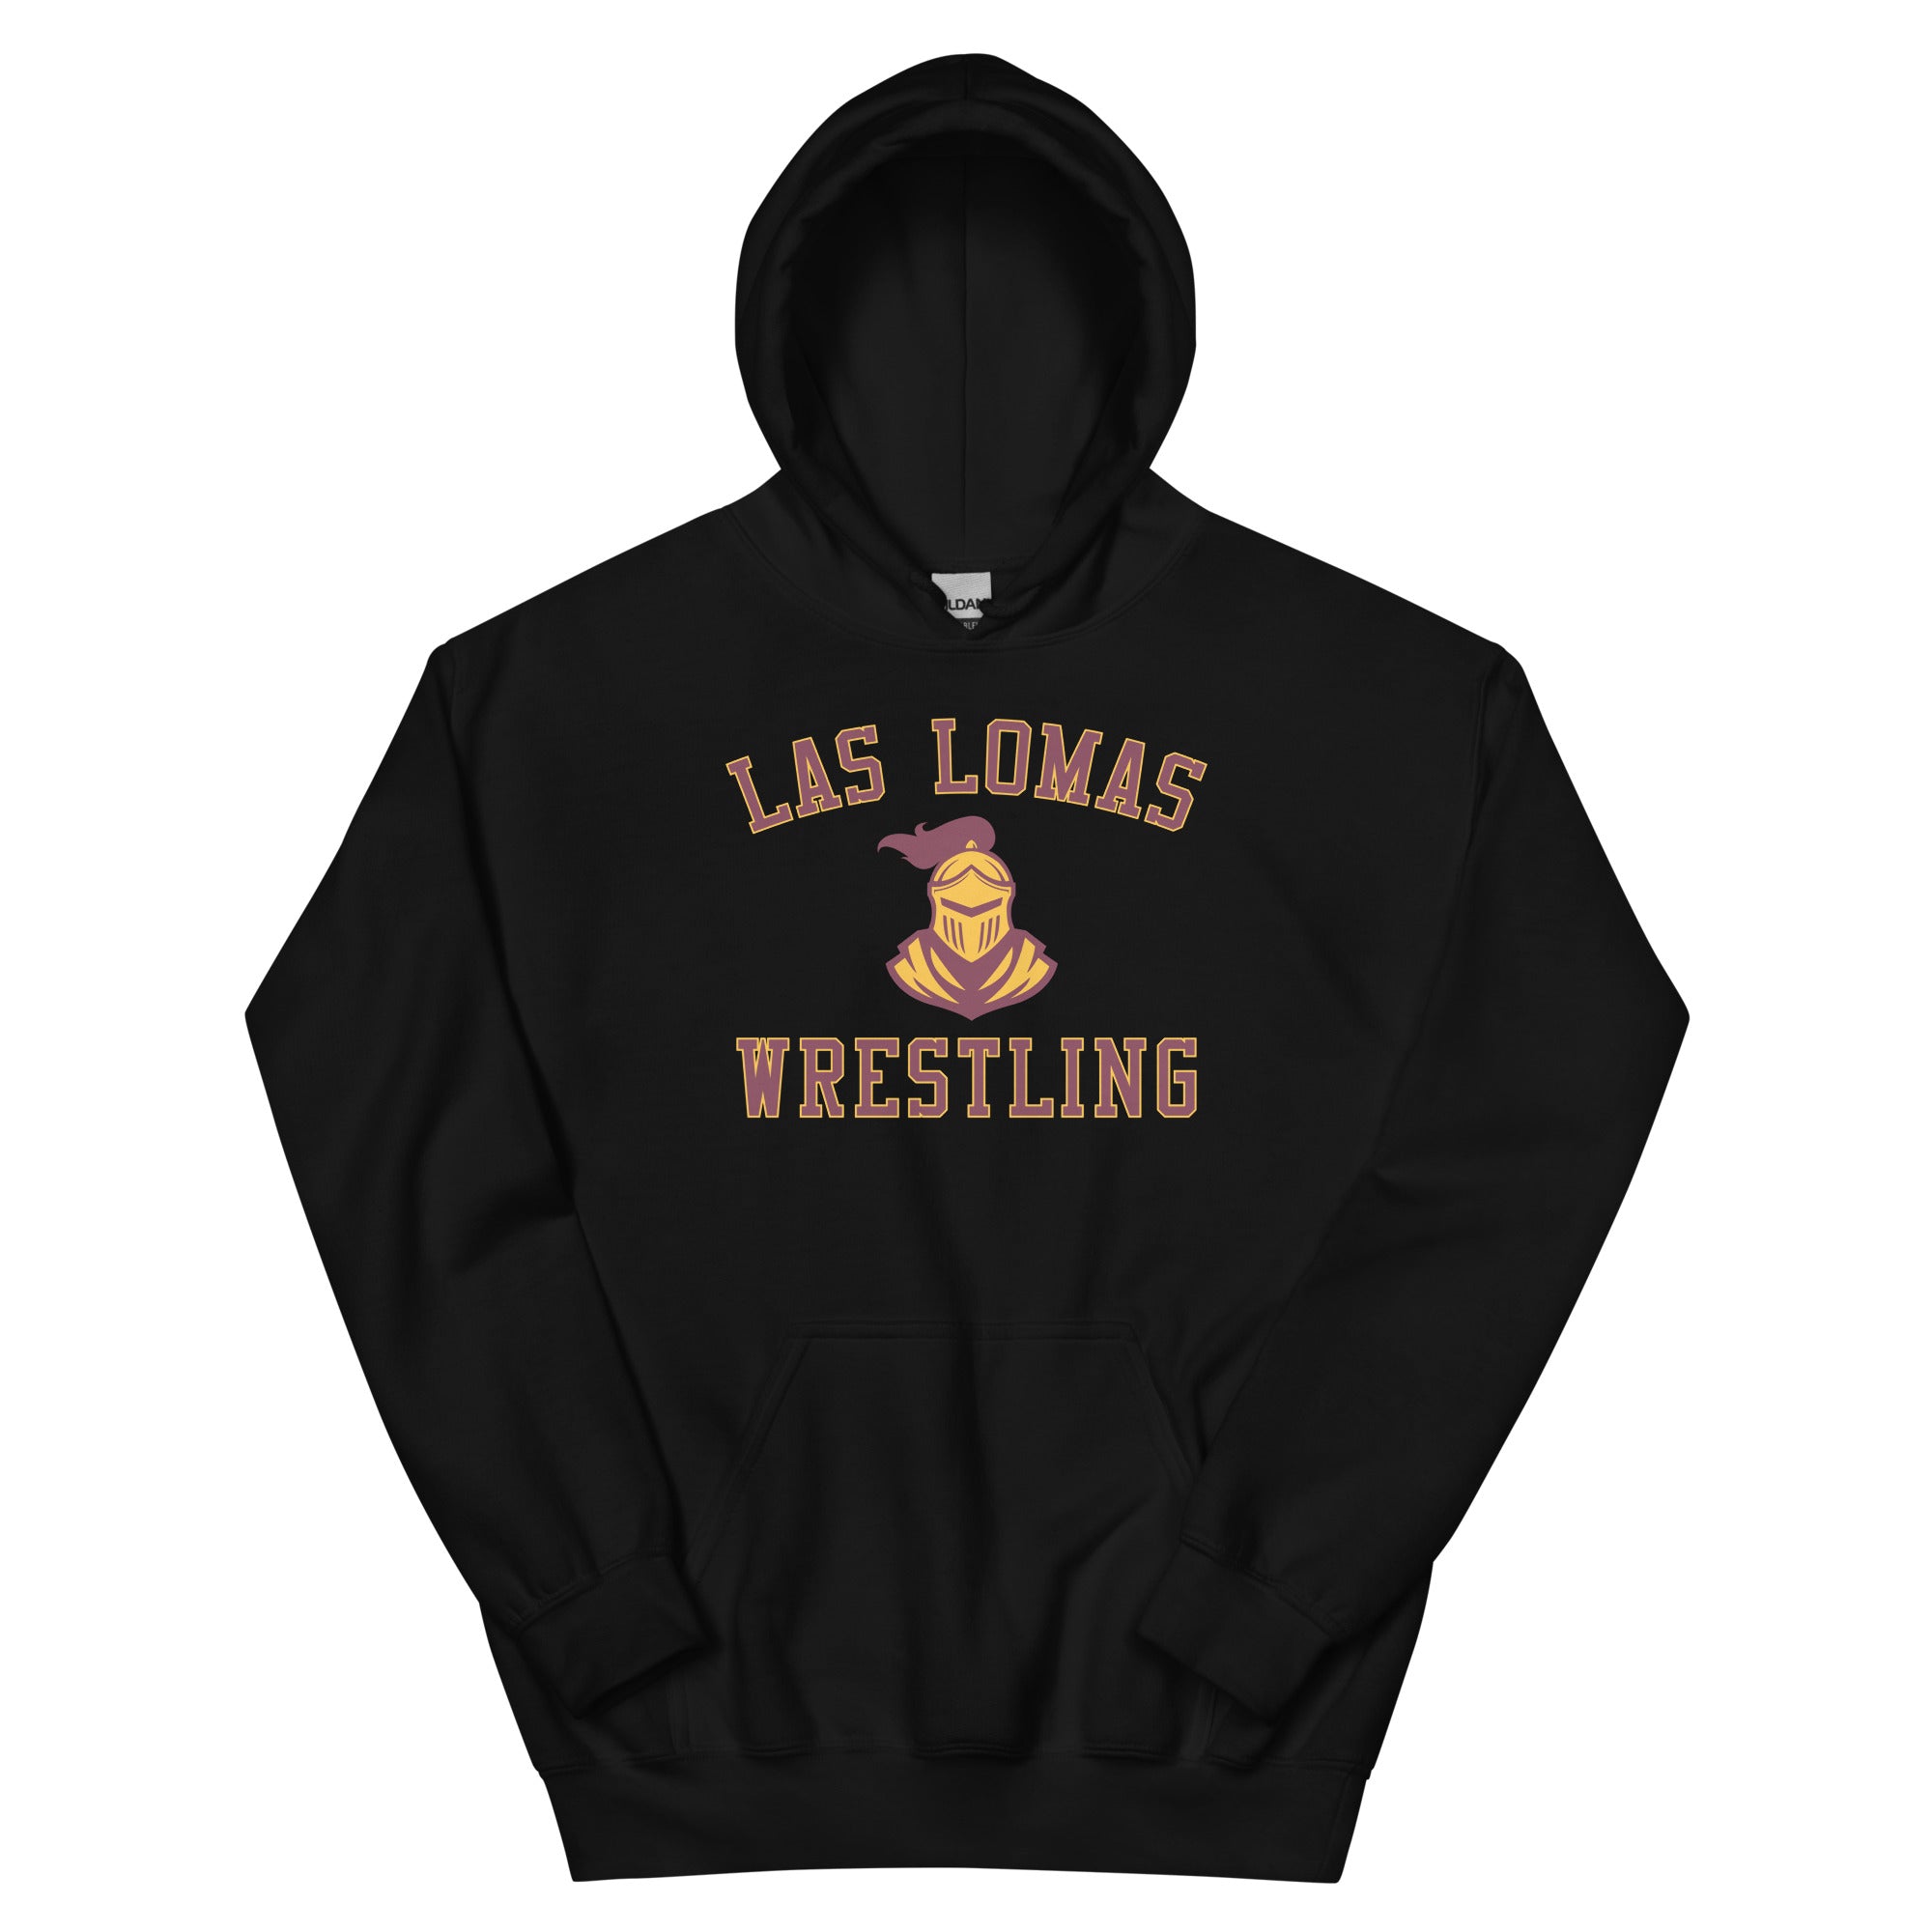 Las Lomas Wrestling Black Unisex Heavy Blend Hoodie